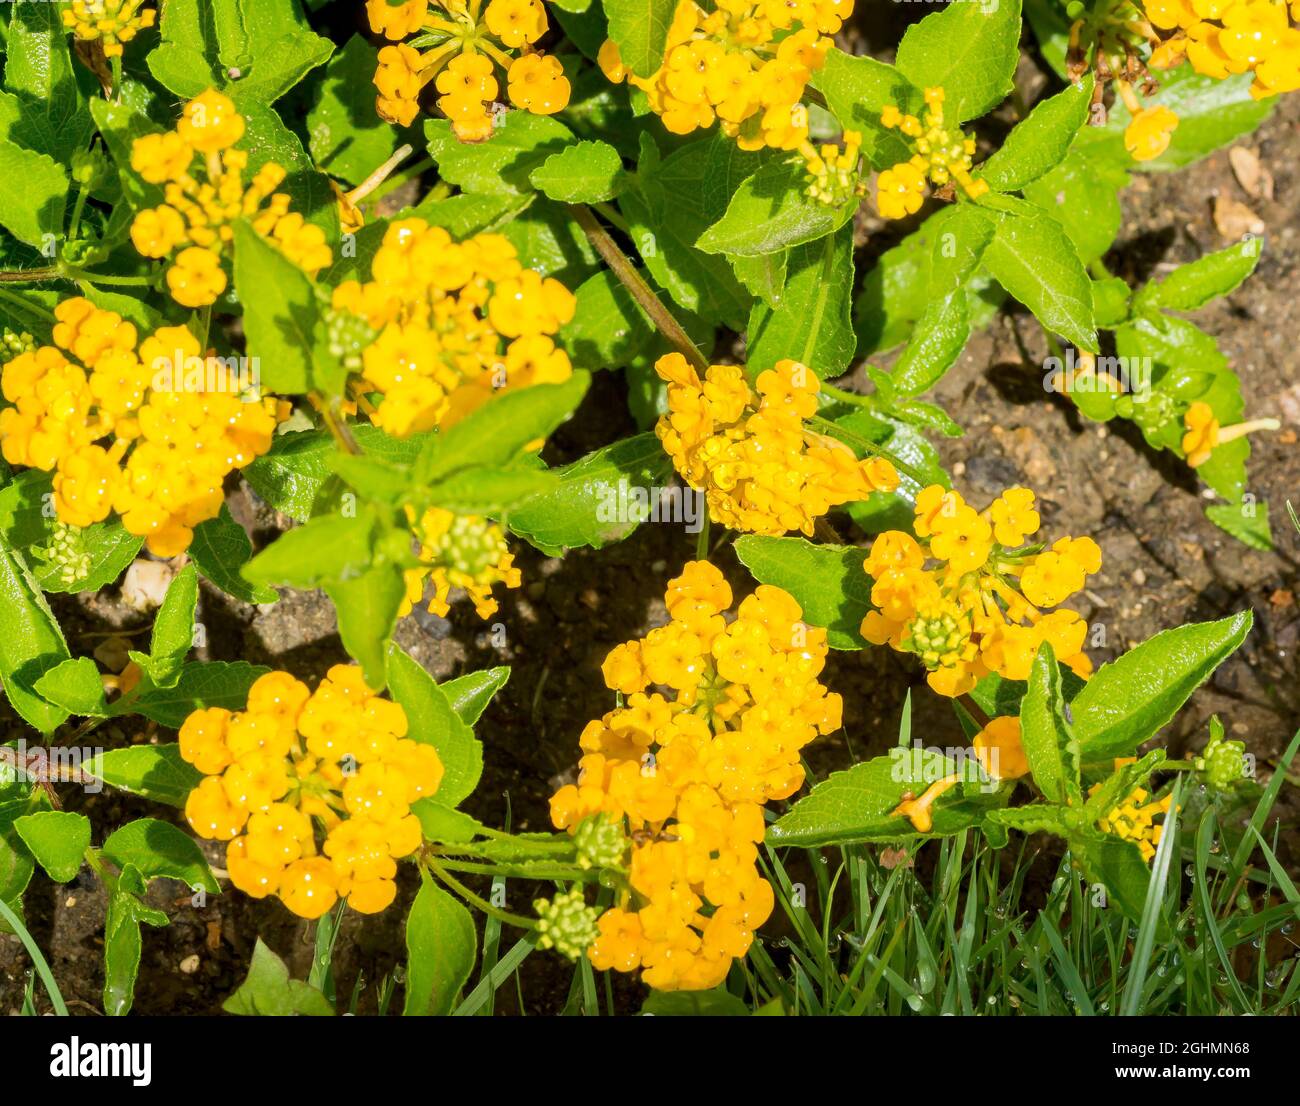 Lantana montevidensis 'Yellow' Stock Photo